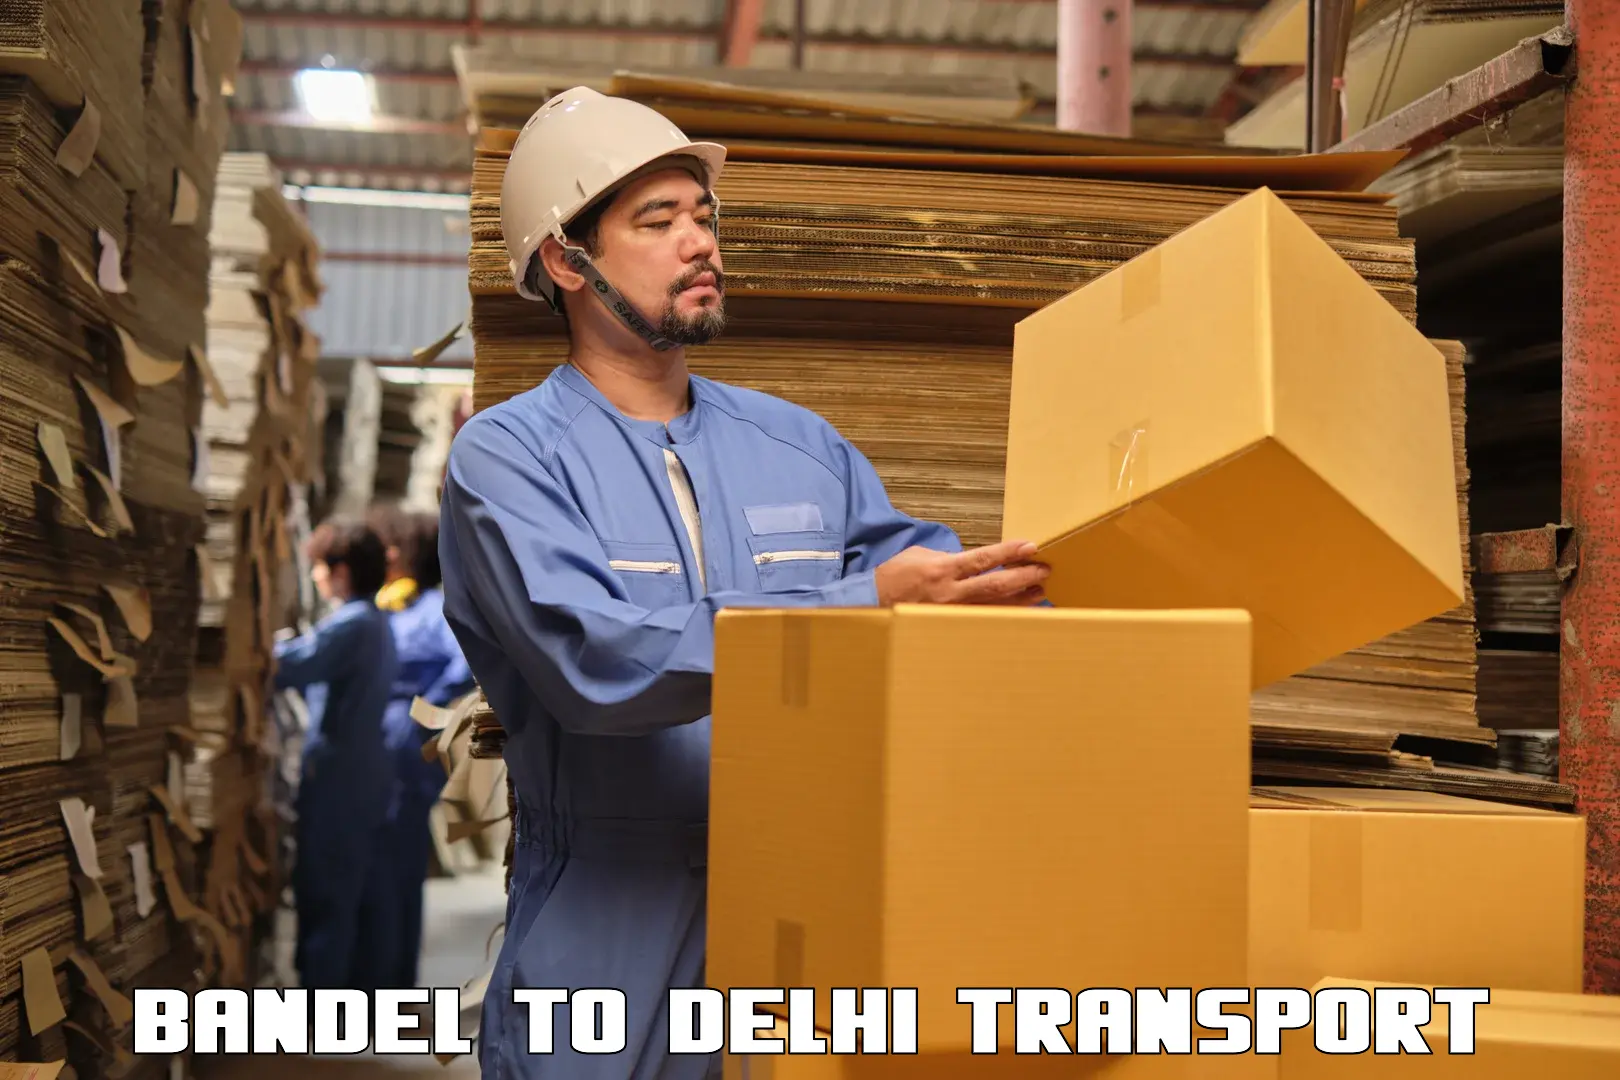 Intercity transport in Bandel to IIT Delhi